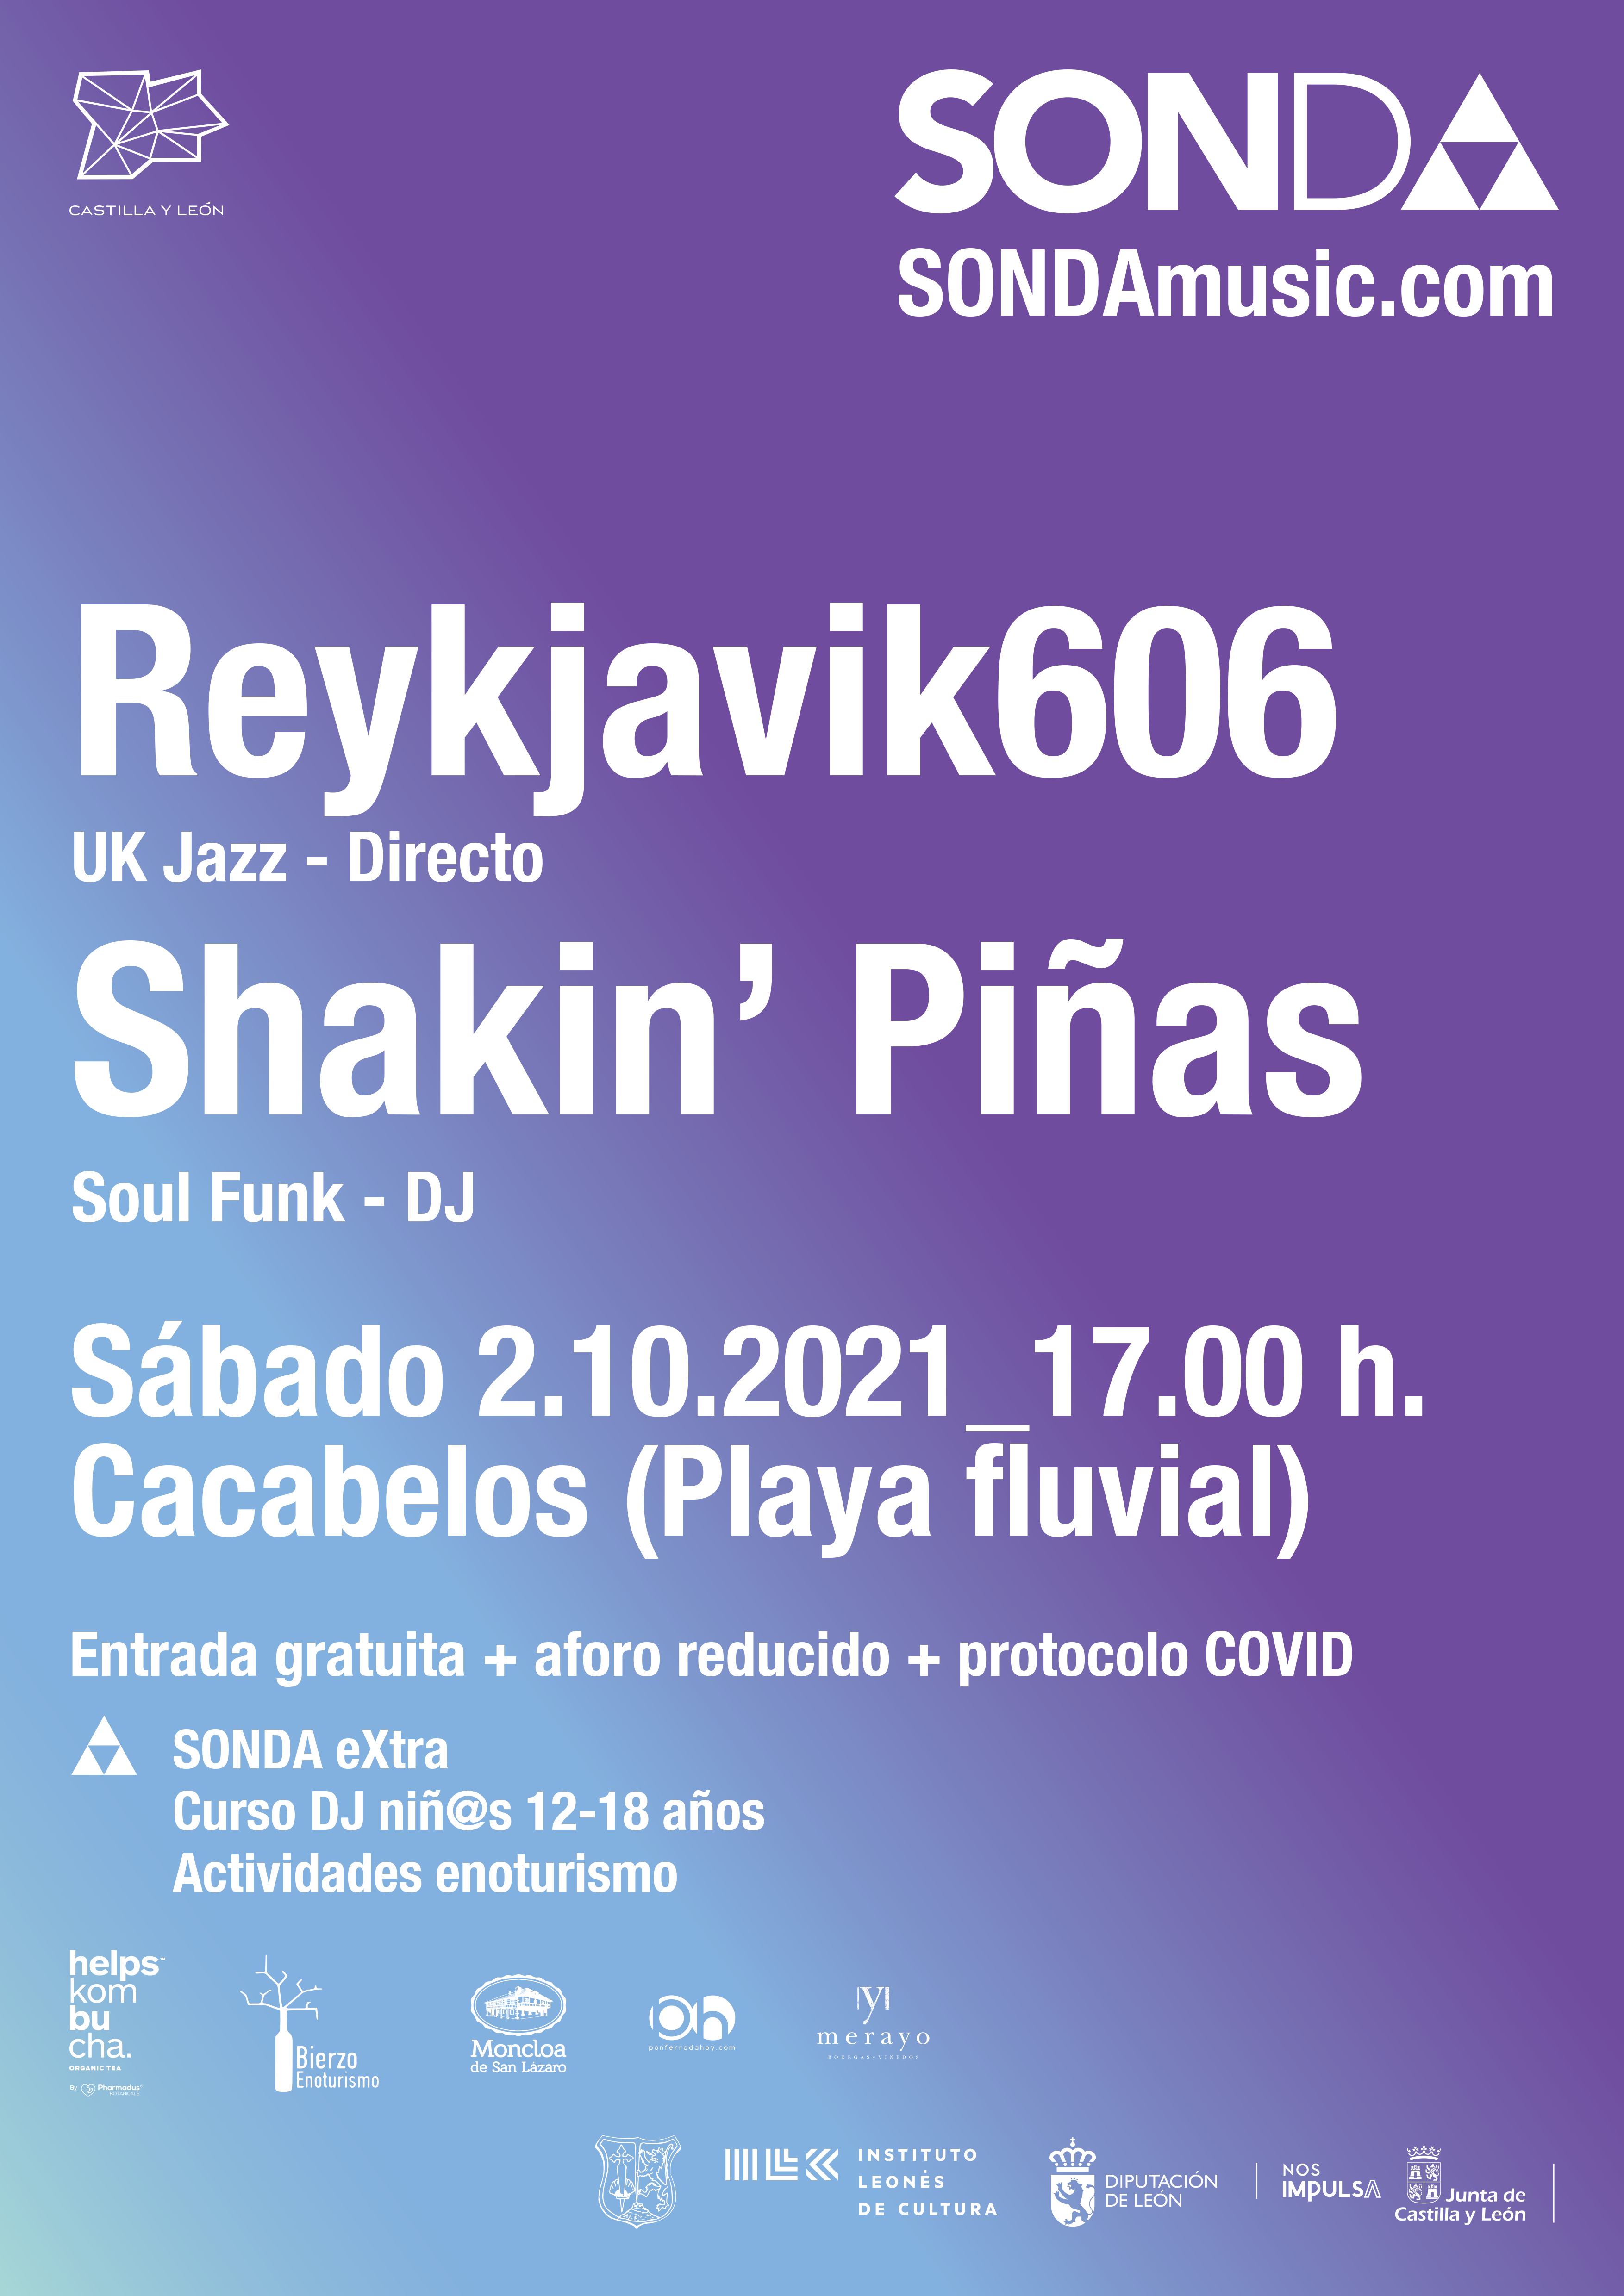 2ª edición de SONDA music, gratuito y con público, Reykjavik606 y Shakin’ Piñas protagonistas en la Playa Fluvial de Cacabelos 4